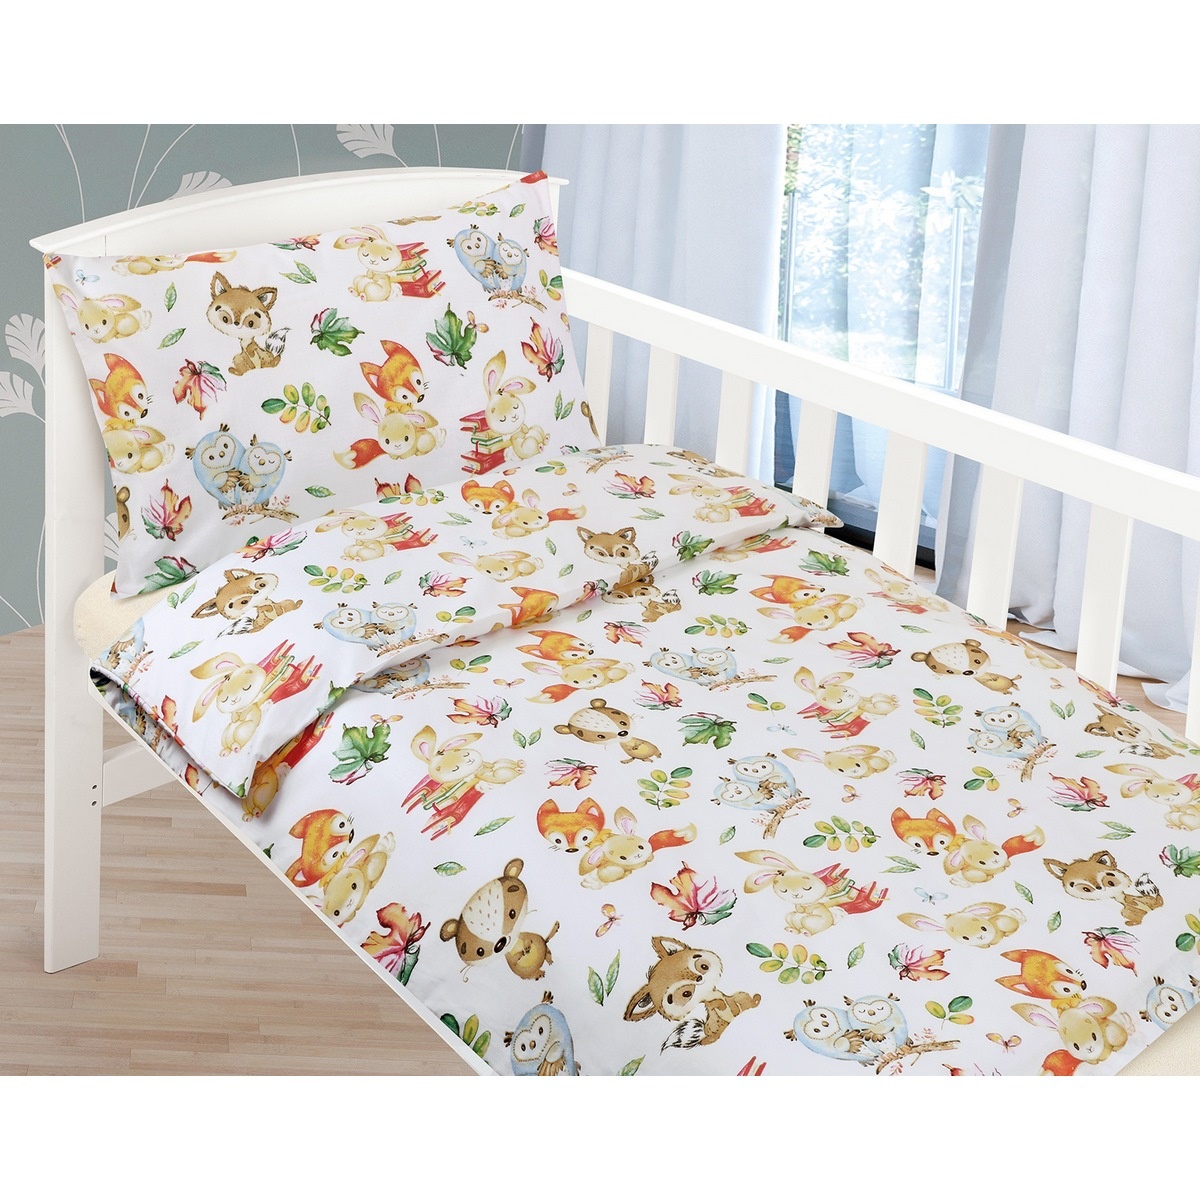 Poza Lenjerie de pat din bumbac, pentru copii, AgataAnimale, 90 x 135 cm, 45 x 60 cm